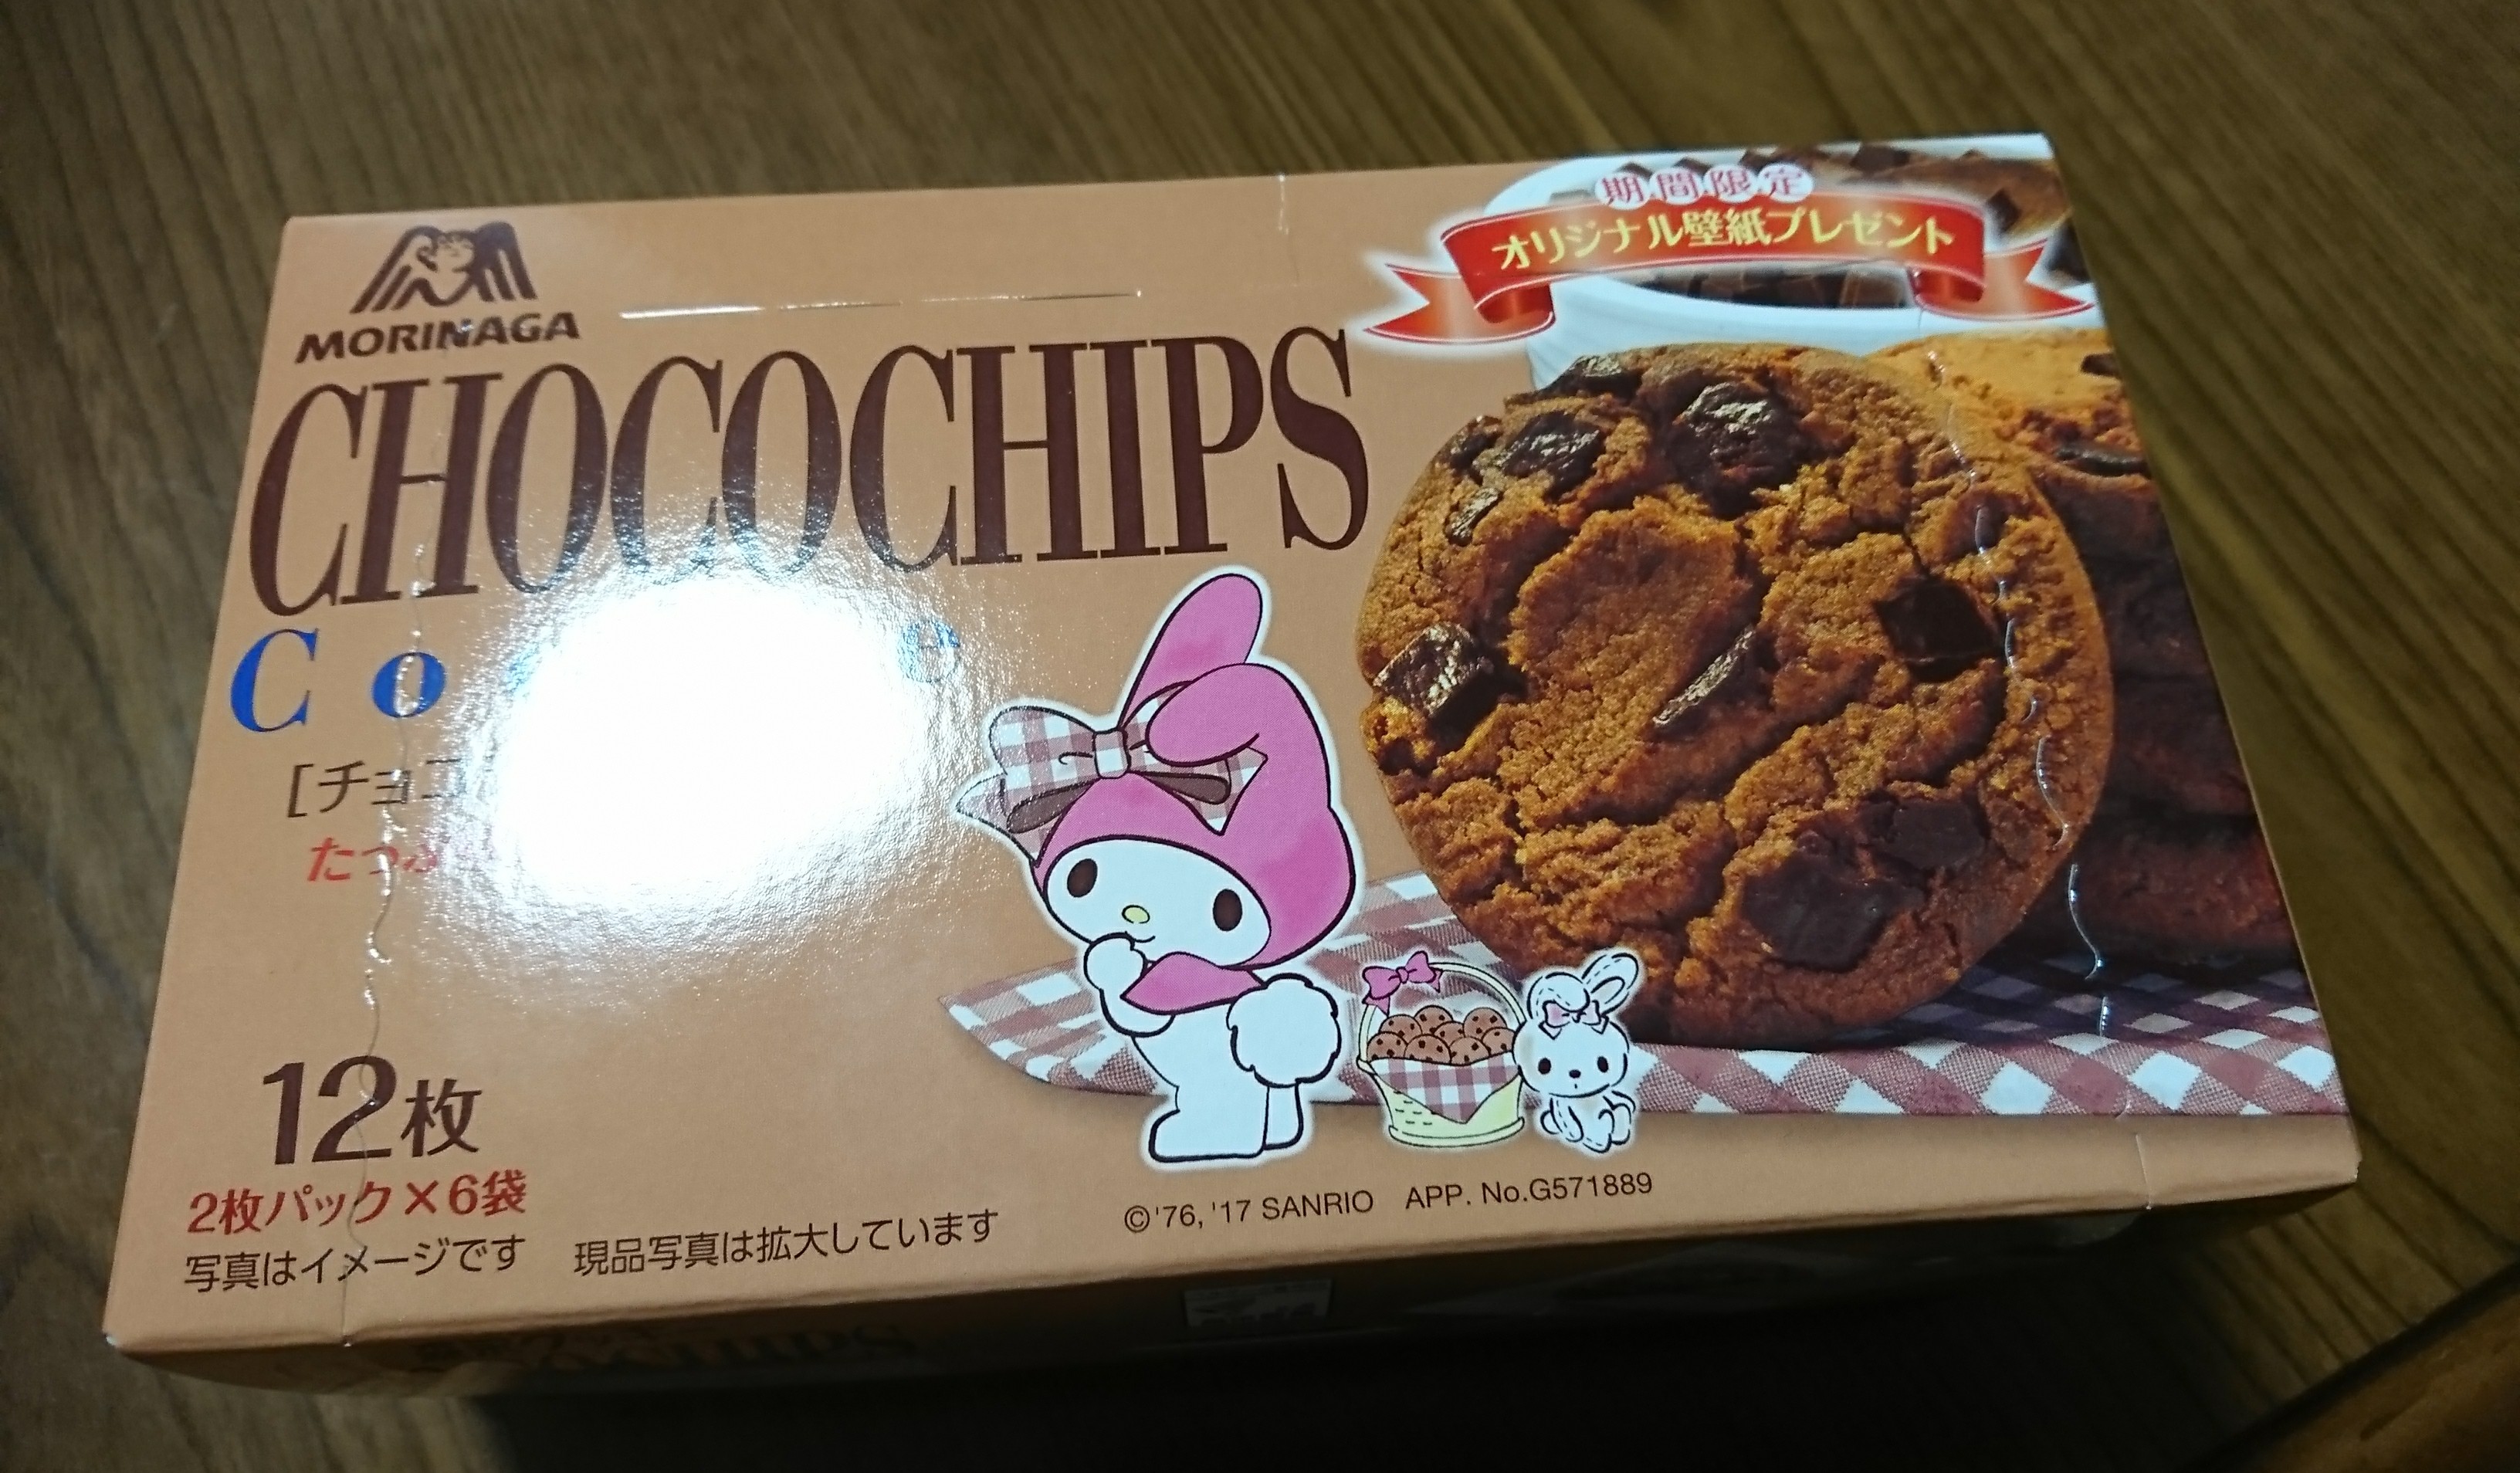 チョコチップクッキーと言えばこれですな オリジナル壁紙プレゼント付きですって エンゼルplus By 森永製菓